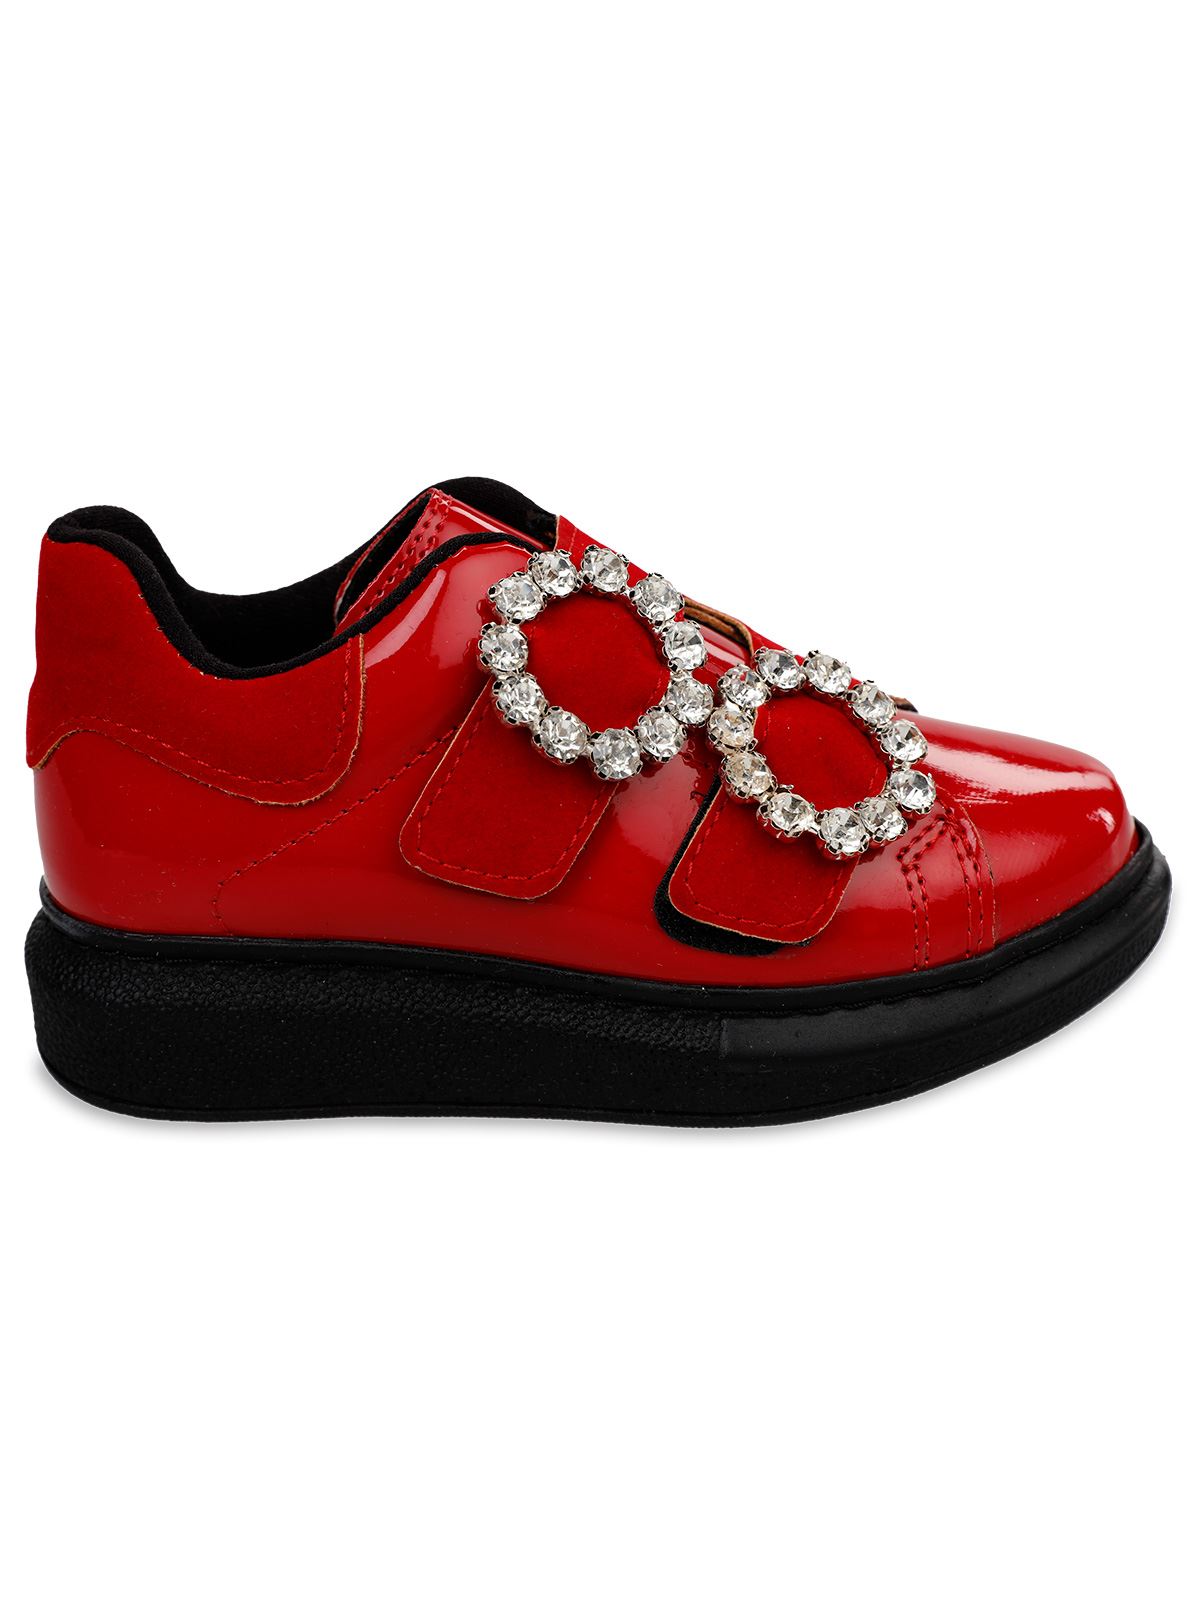 Harli Kız Çocuk Spor Ayakkabı 26-30 Numara Kırmızı